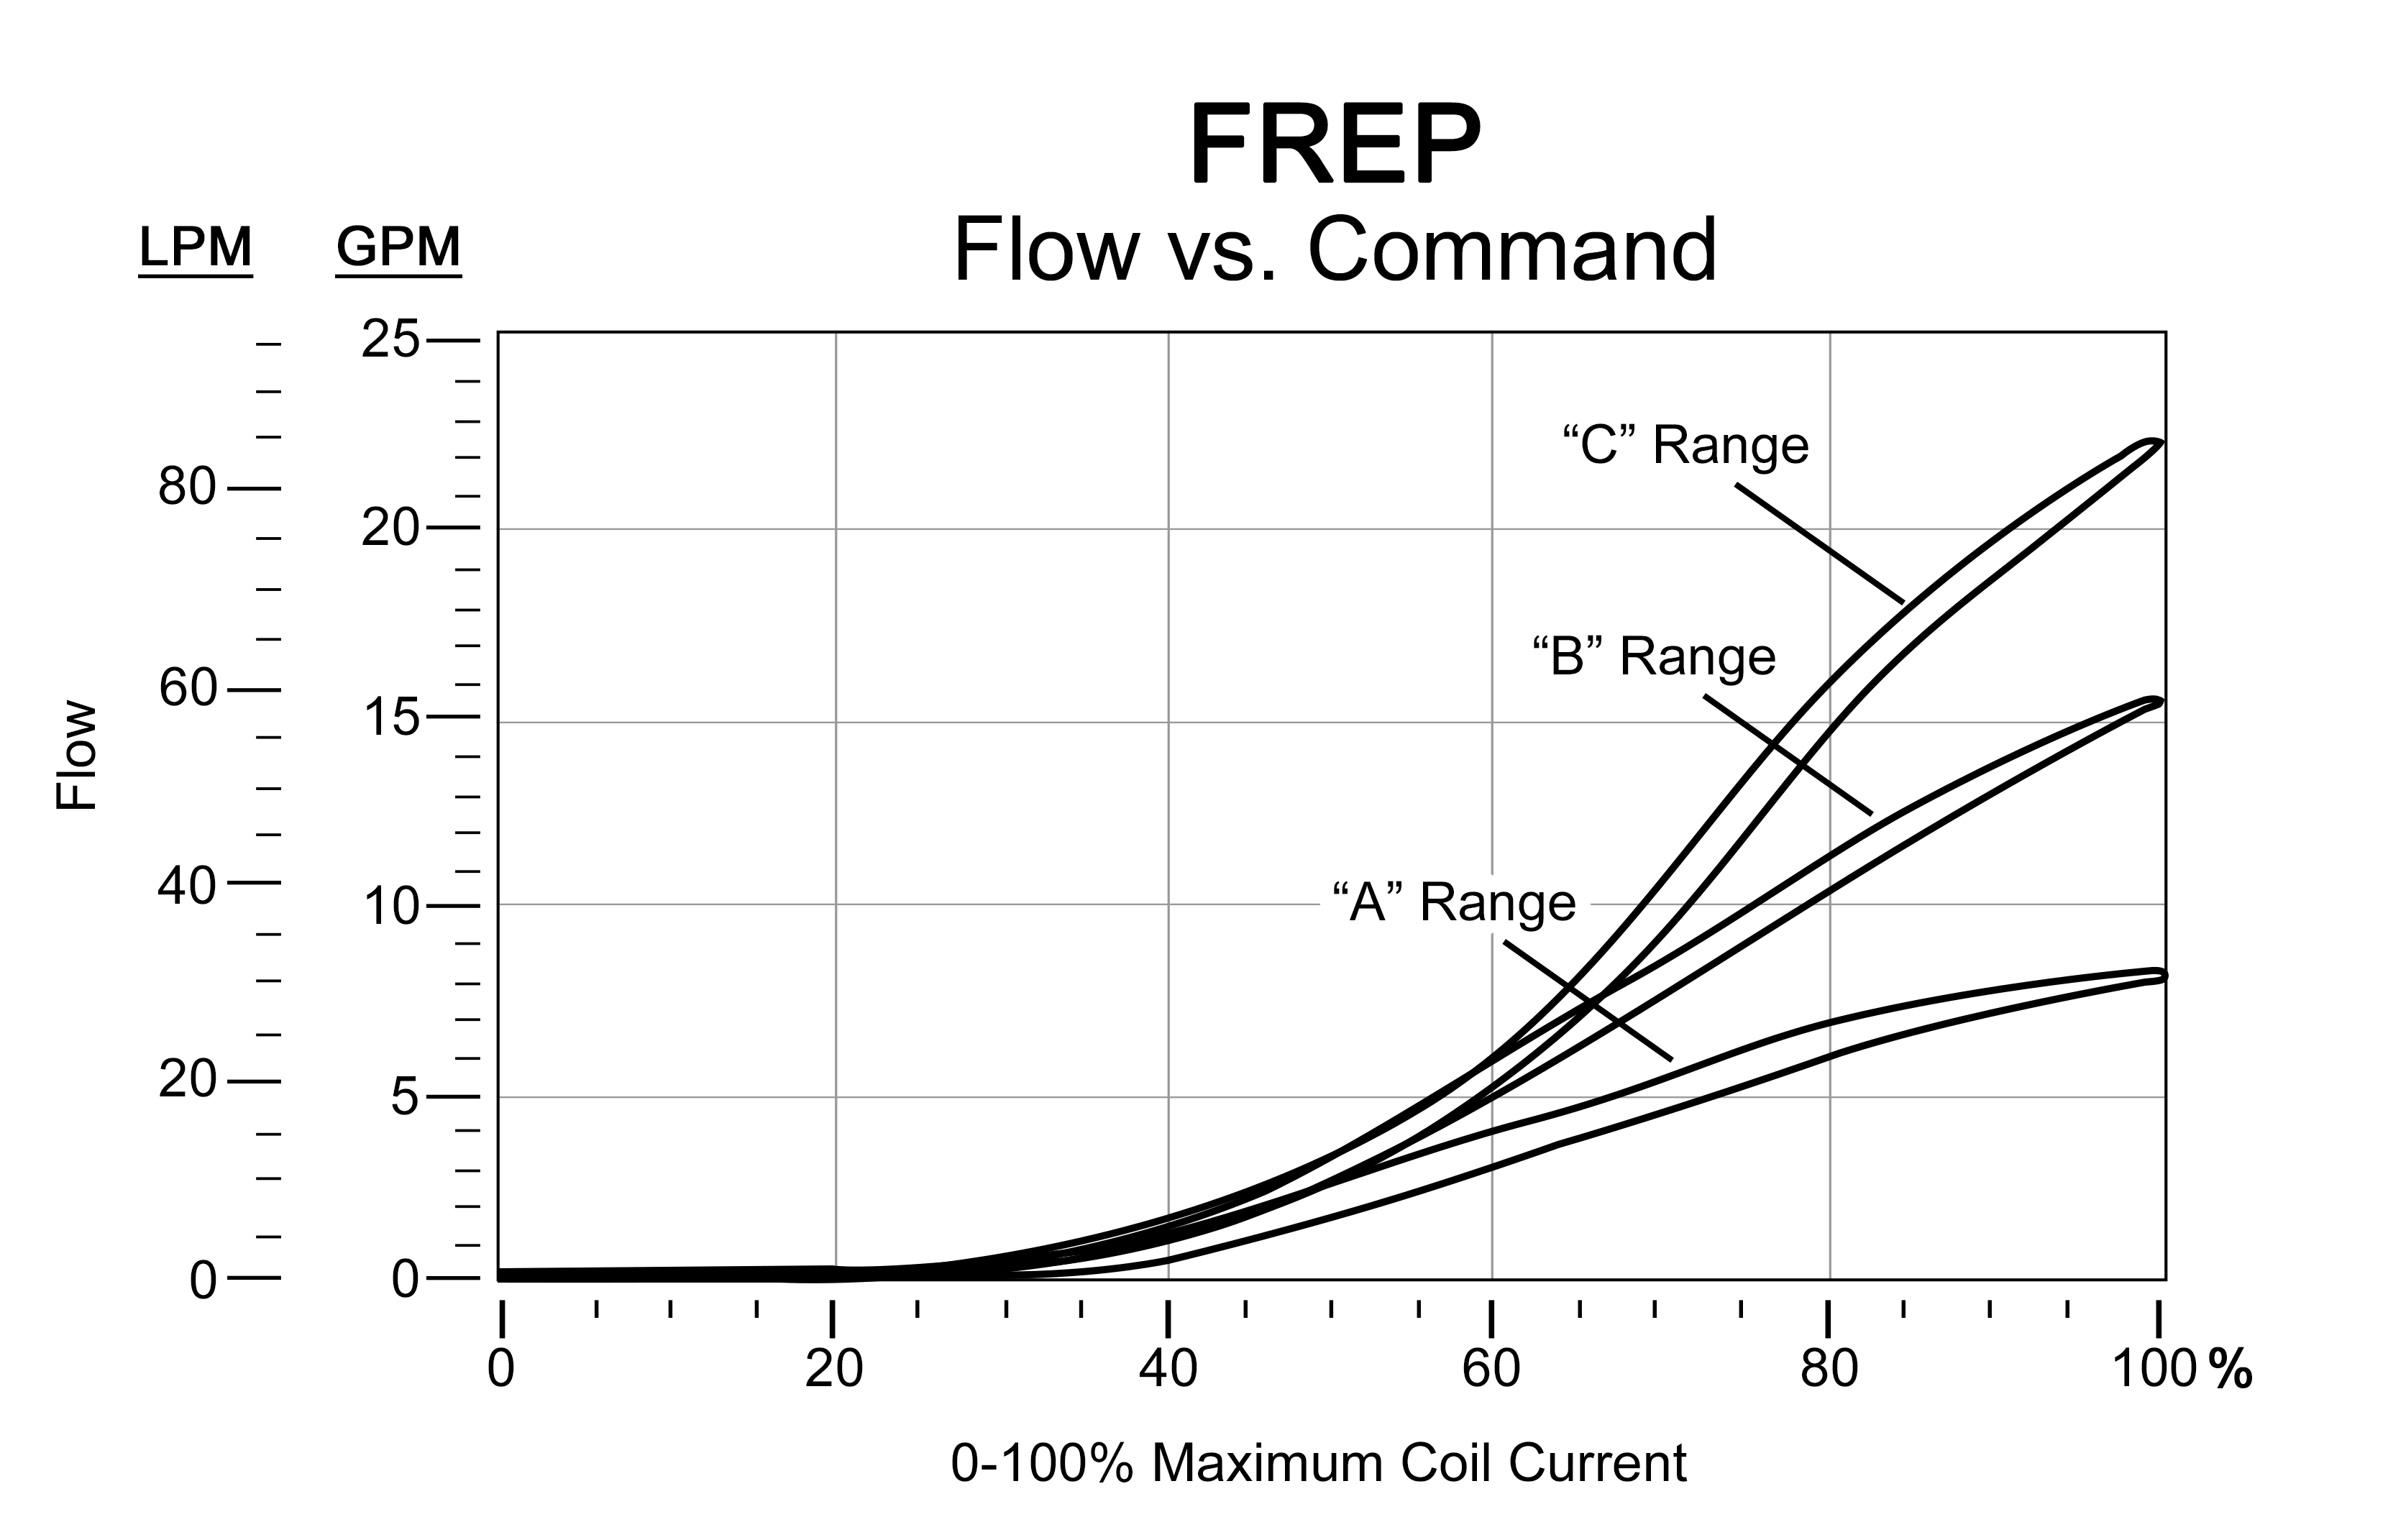 FREP Flow versus Command